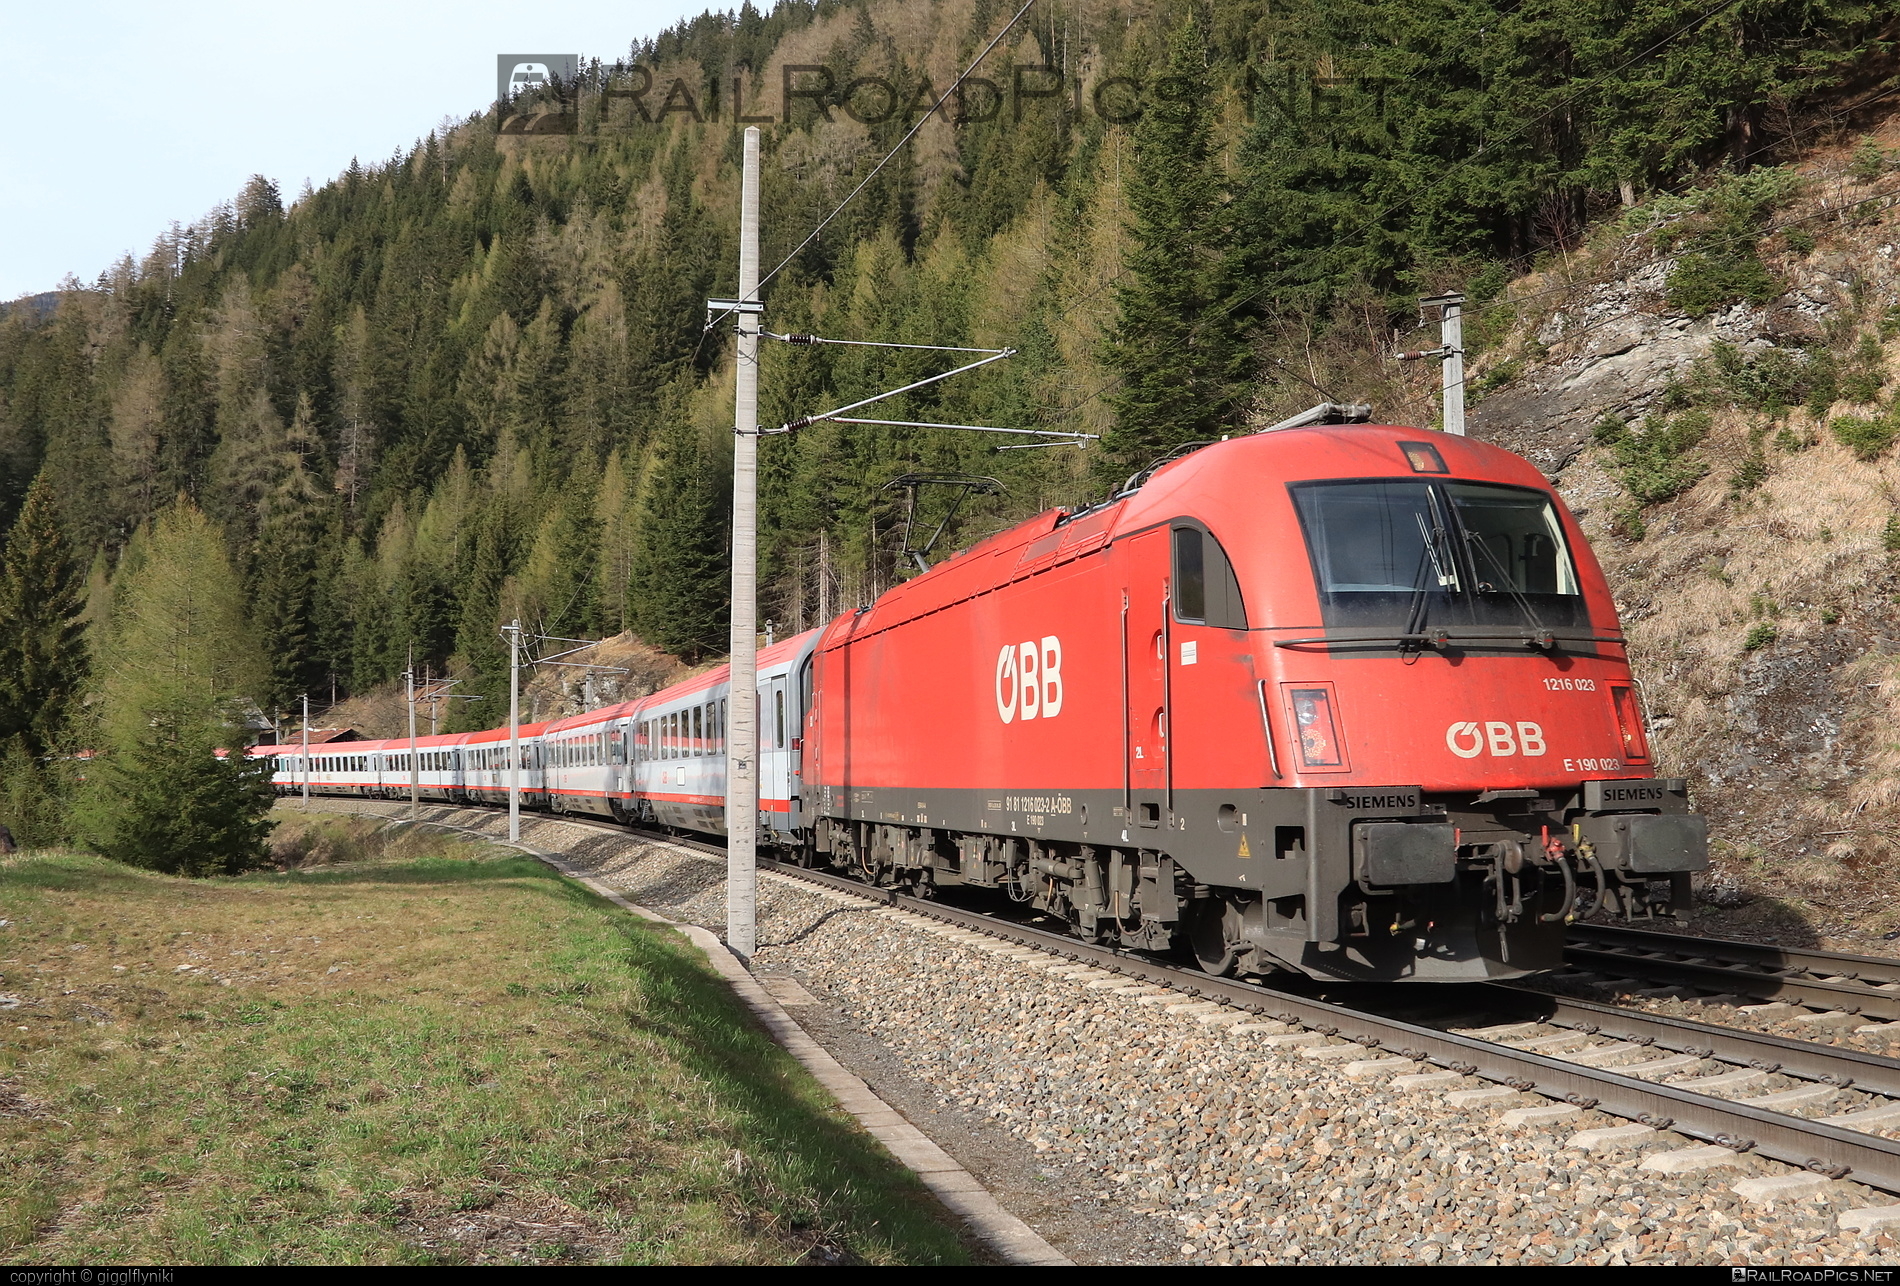 Siemens ES 64 U4 - 1216 023 operated by Österreichische Bundesbahnen #es64 #es64u4 #eurosprinter #obb #osterreichischebundesbahnen #siemens #siemensEs64 #siemensEs64u4 #siemenstaurus #taurus #tauruslocomotive